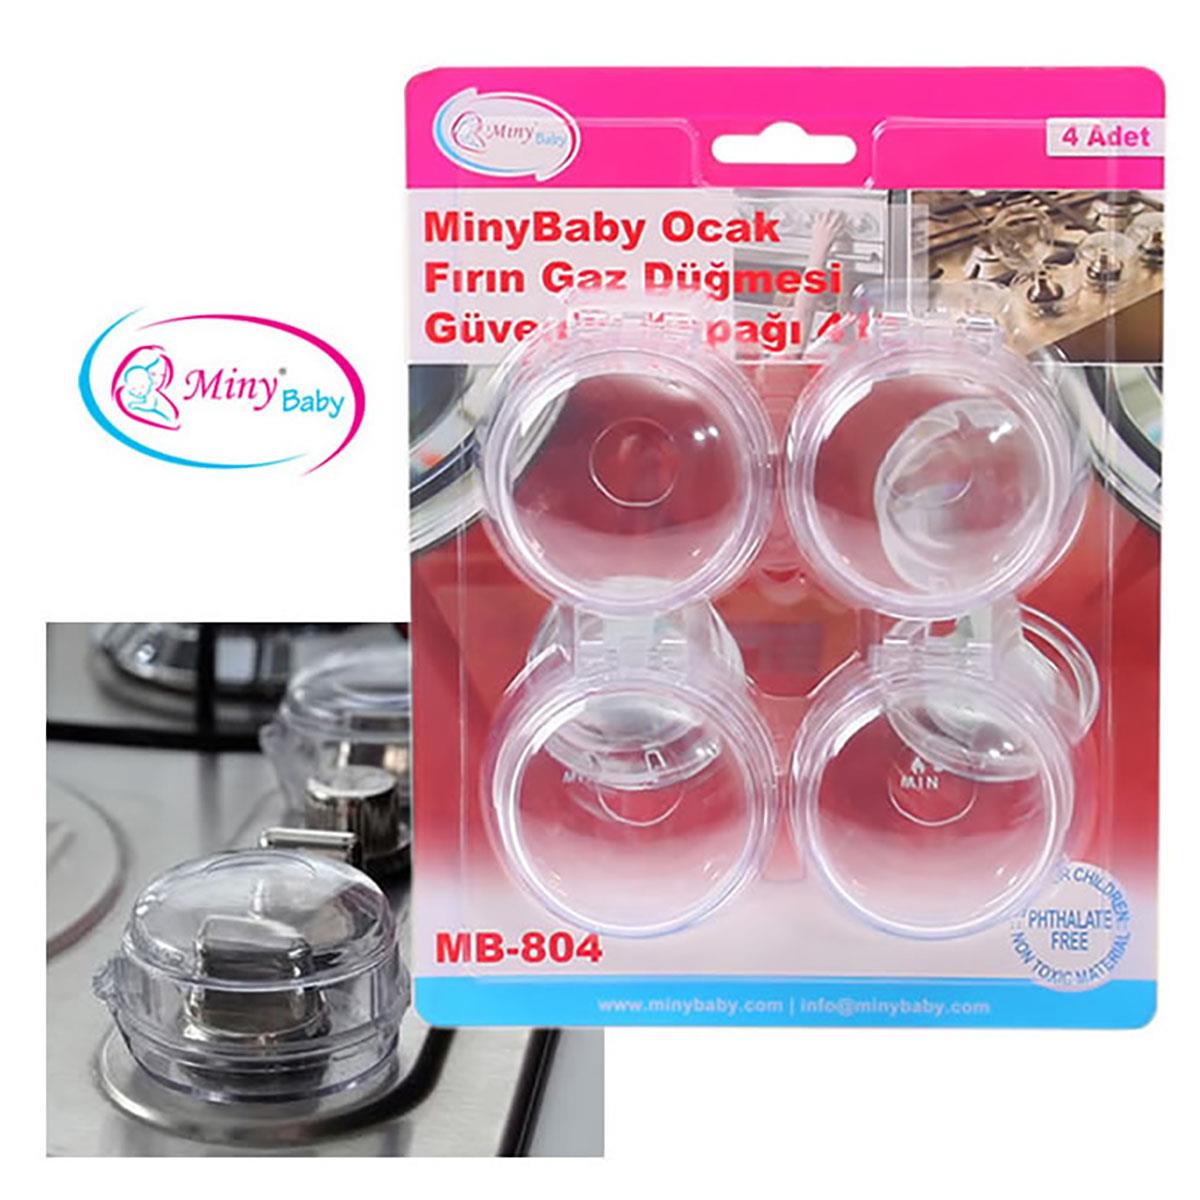 Miny Baby Ocak - Fırın Gaz Düğmesi Güvenlik Kapağı 4'lü